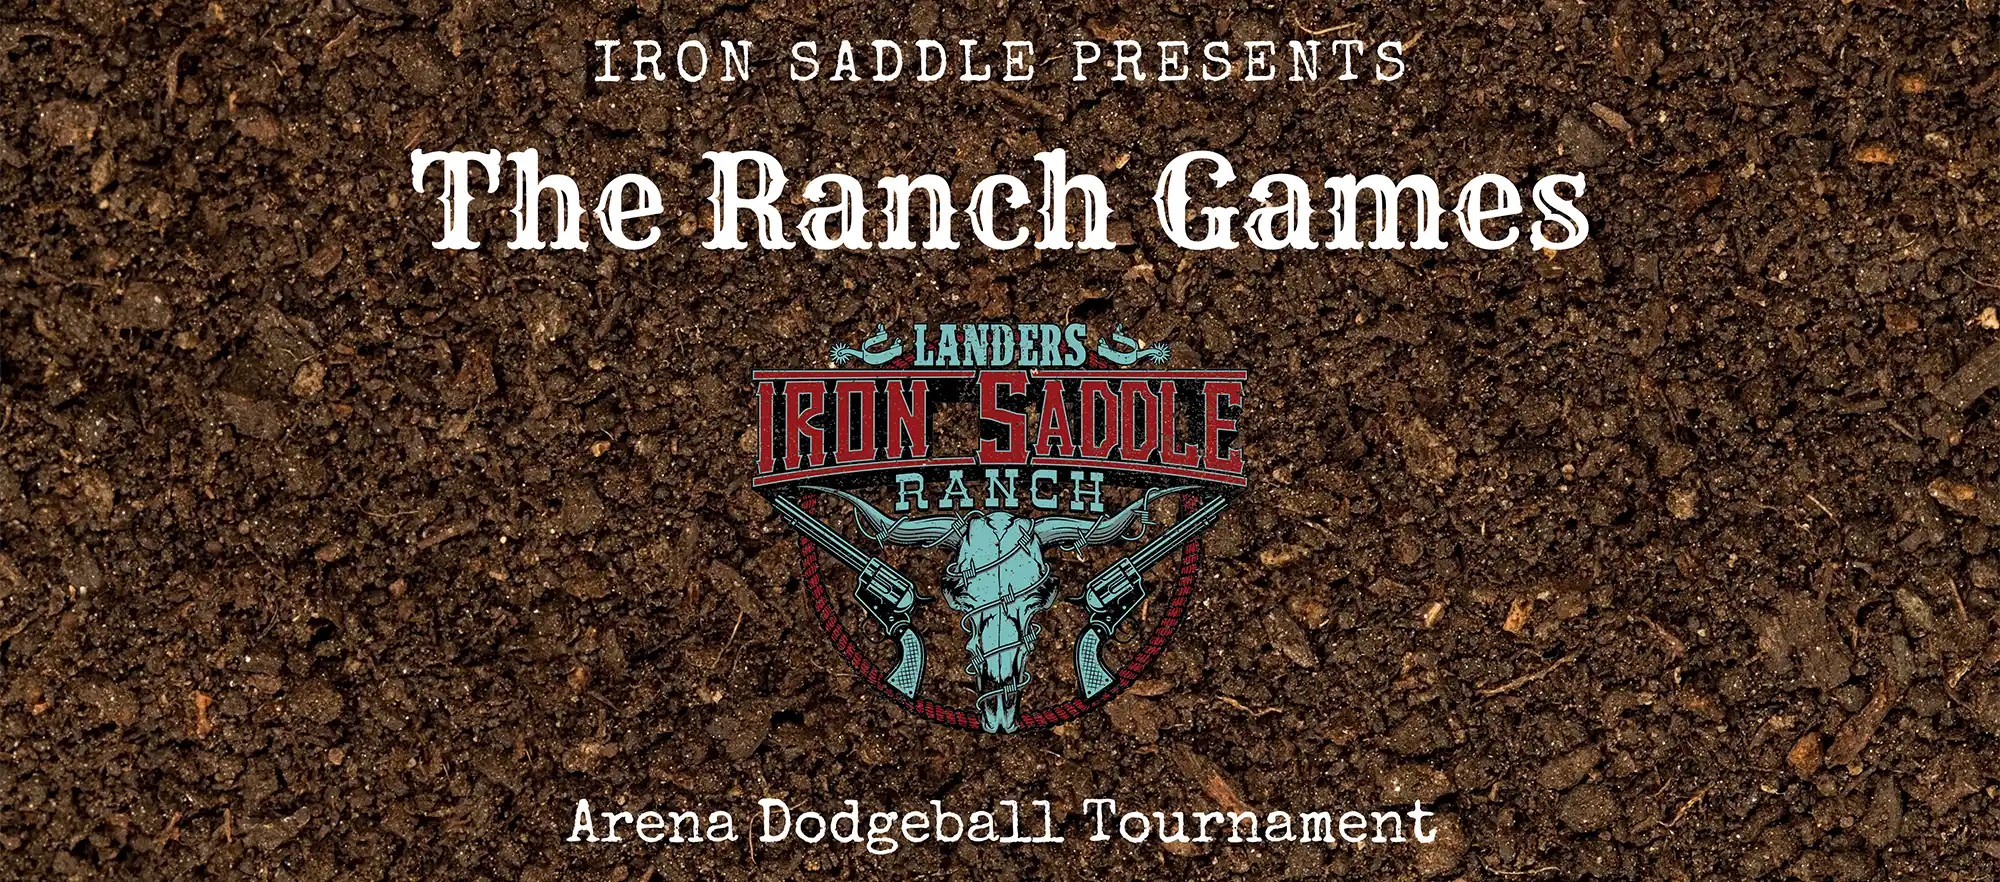 Ranch Games at Iron Saddle Ranch